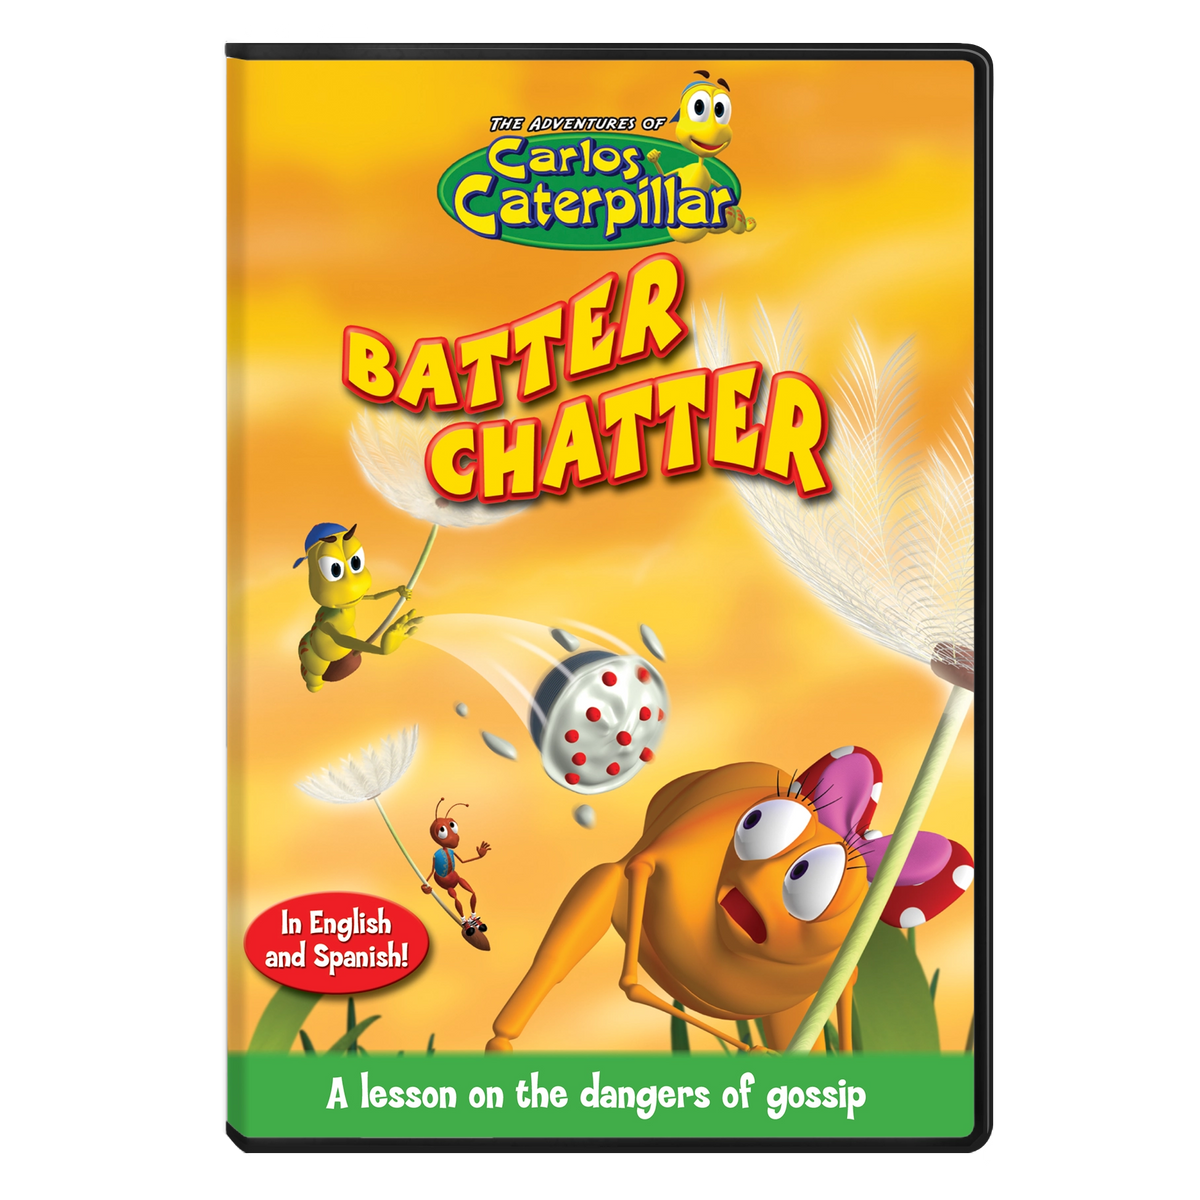 Carlos Caterpillar DVD - Ep.08: Batter Chatter